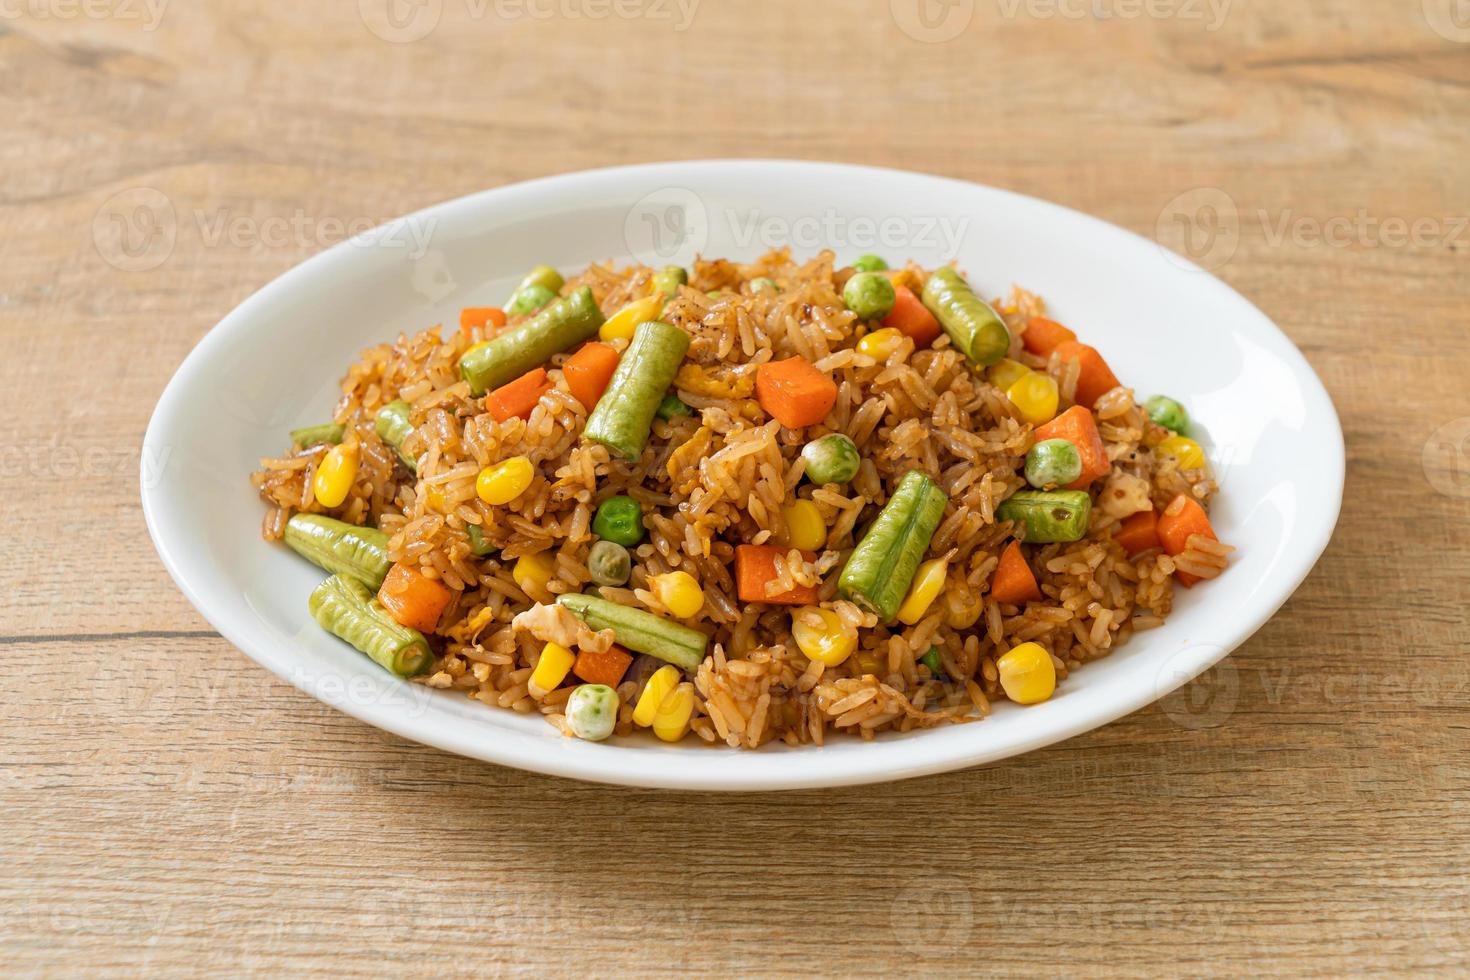 gebakken rijst met groene erwten, wortel en maïs - vegetarische en gezonde voedingsstijl foto